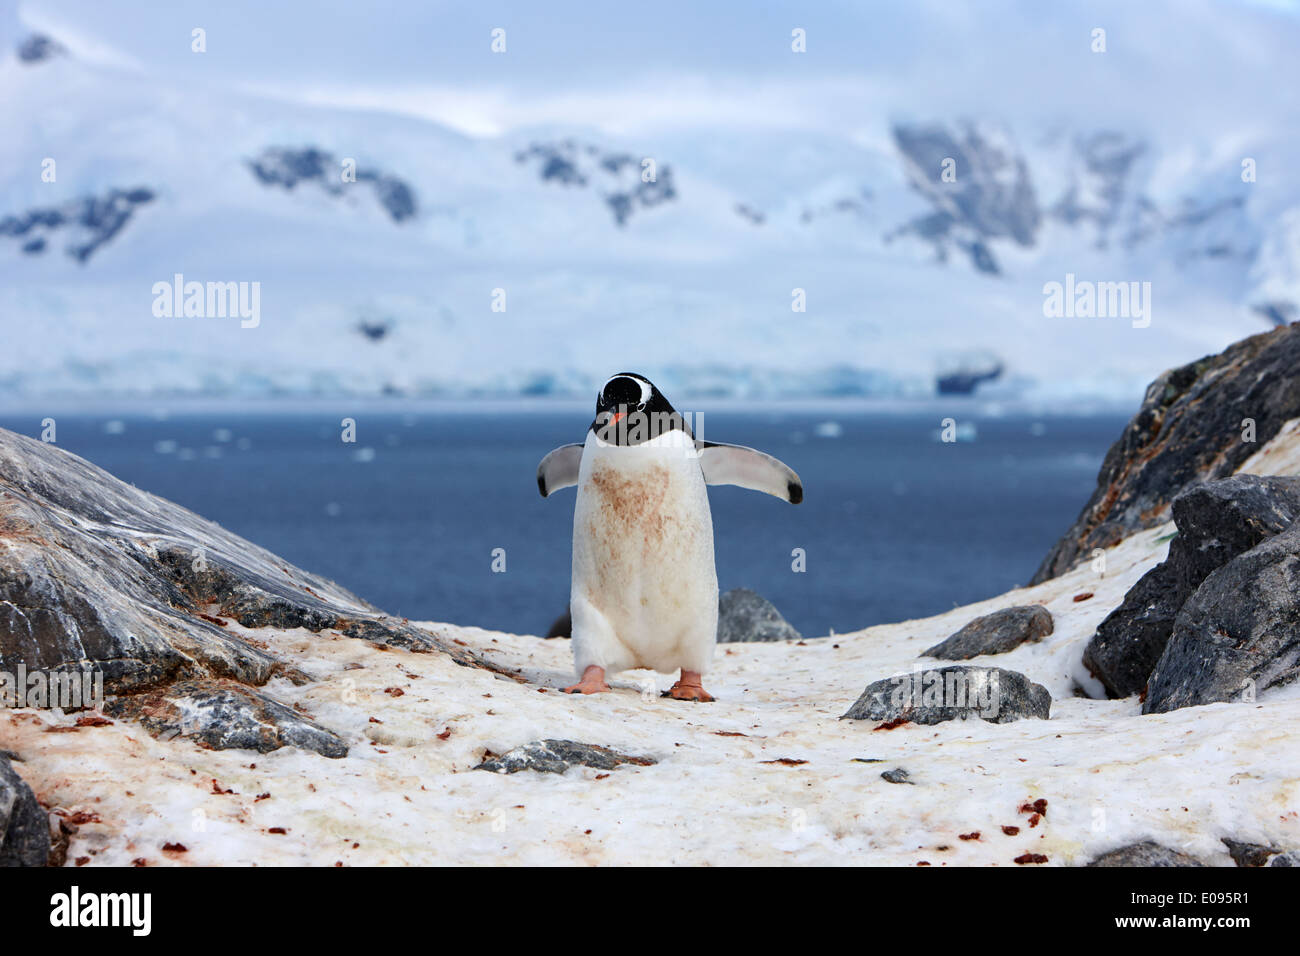 La Gentoo pingouin avec ailes déployées marche à Neko Harbour péninsule arctowski continent Antarctique Antarctique Banque D'Images